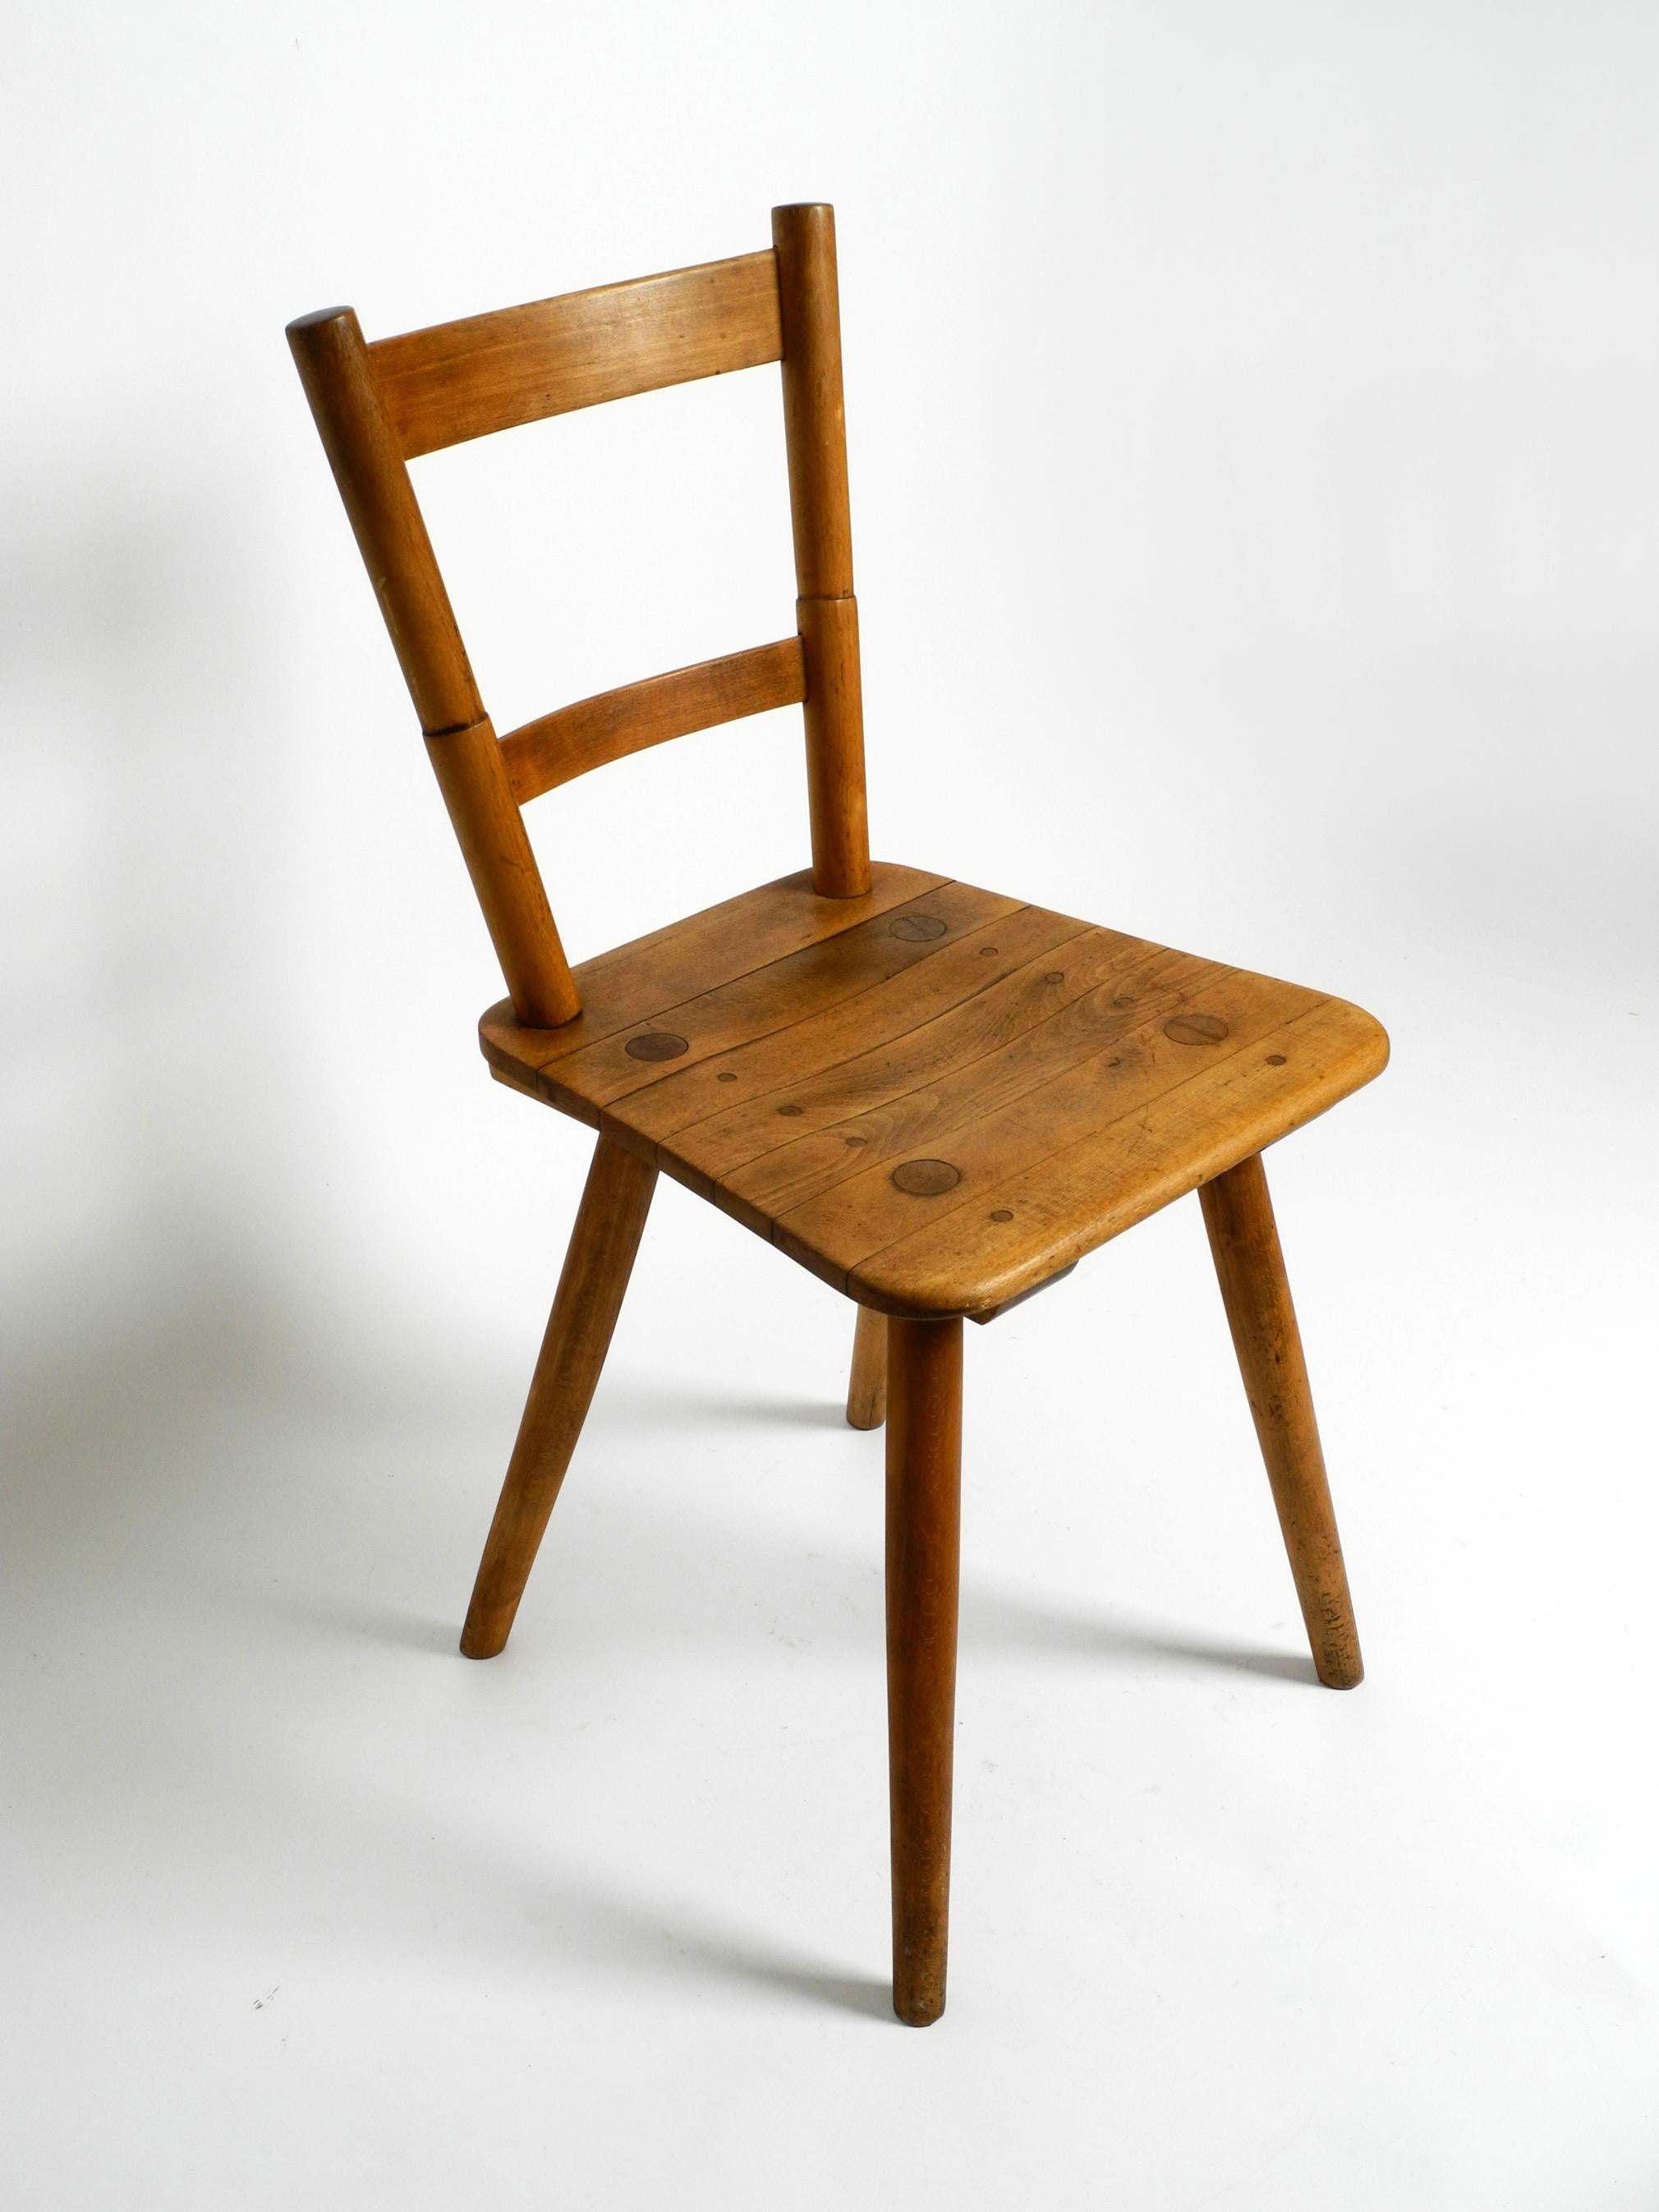 German 1930s Tübinger chair by the architect Prof. Adolf Gustav Schneck for Schäfer  For Sale